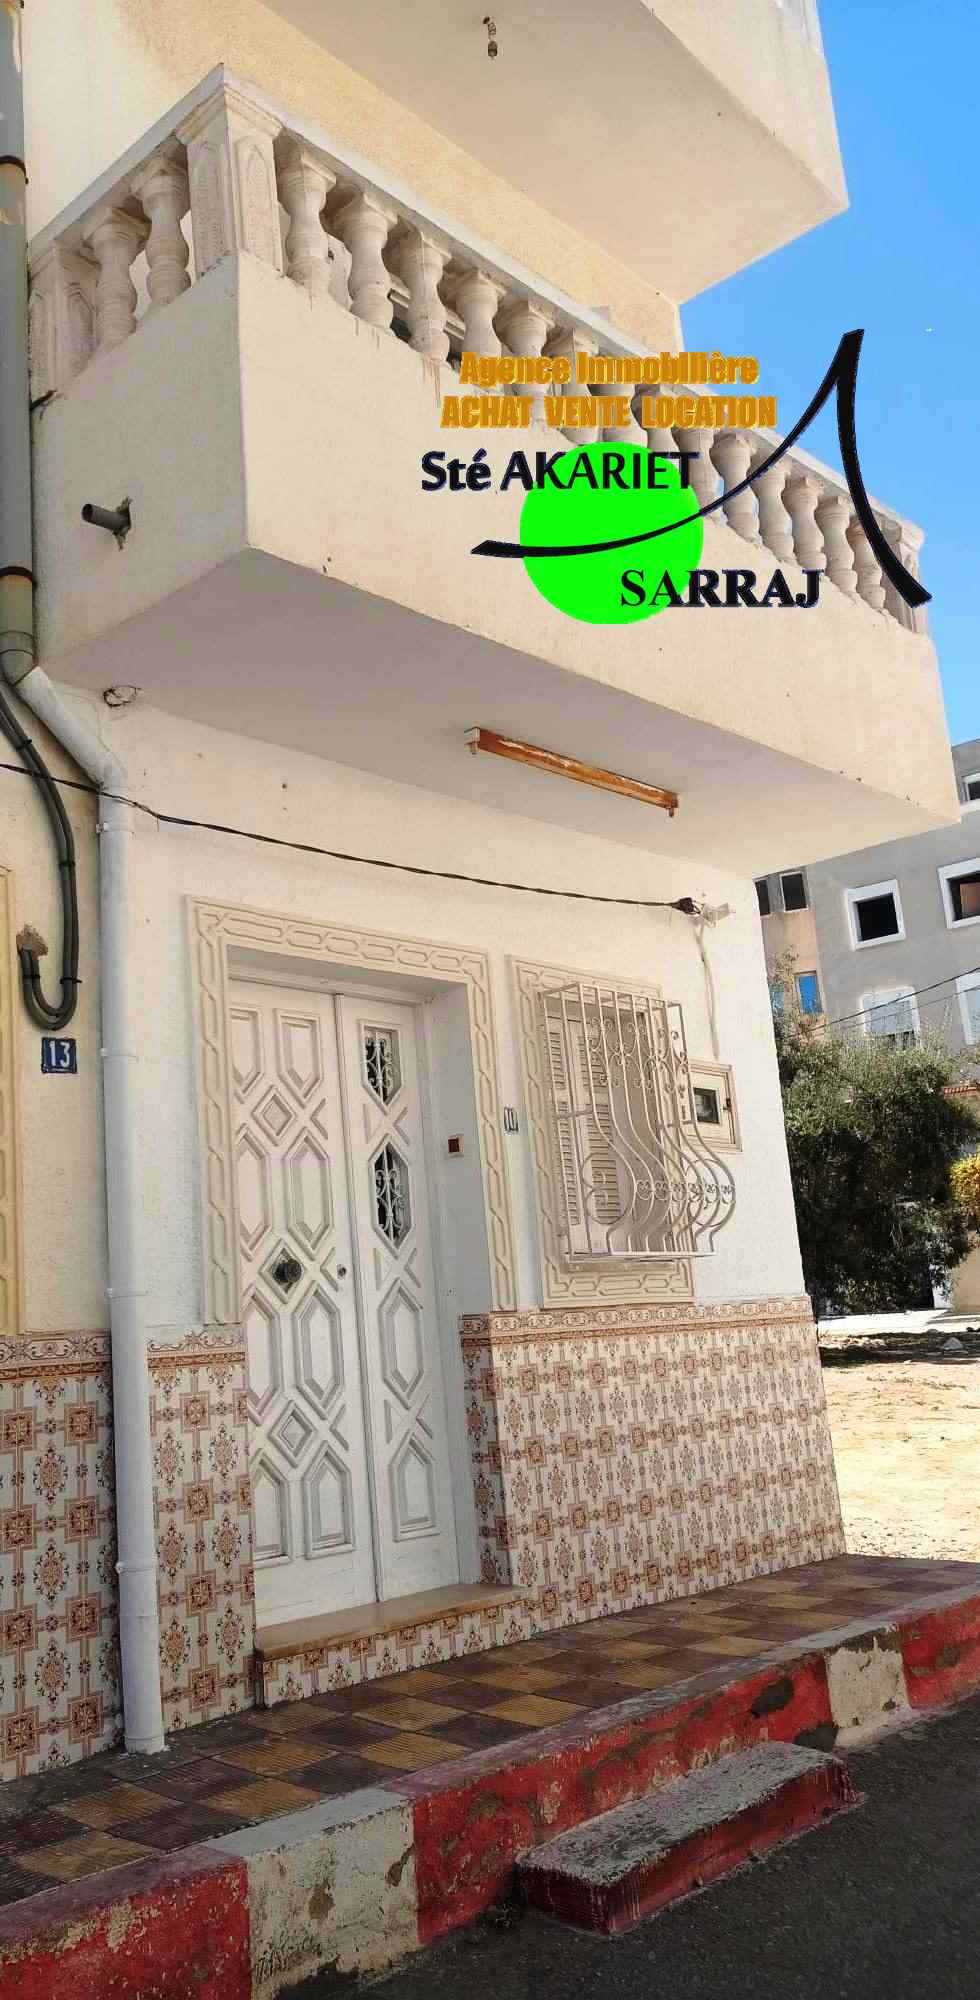 Hammam Sousse Hammam Sousse Vente Maisons Maison r1 avec studio  hammem sousse menchia